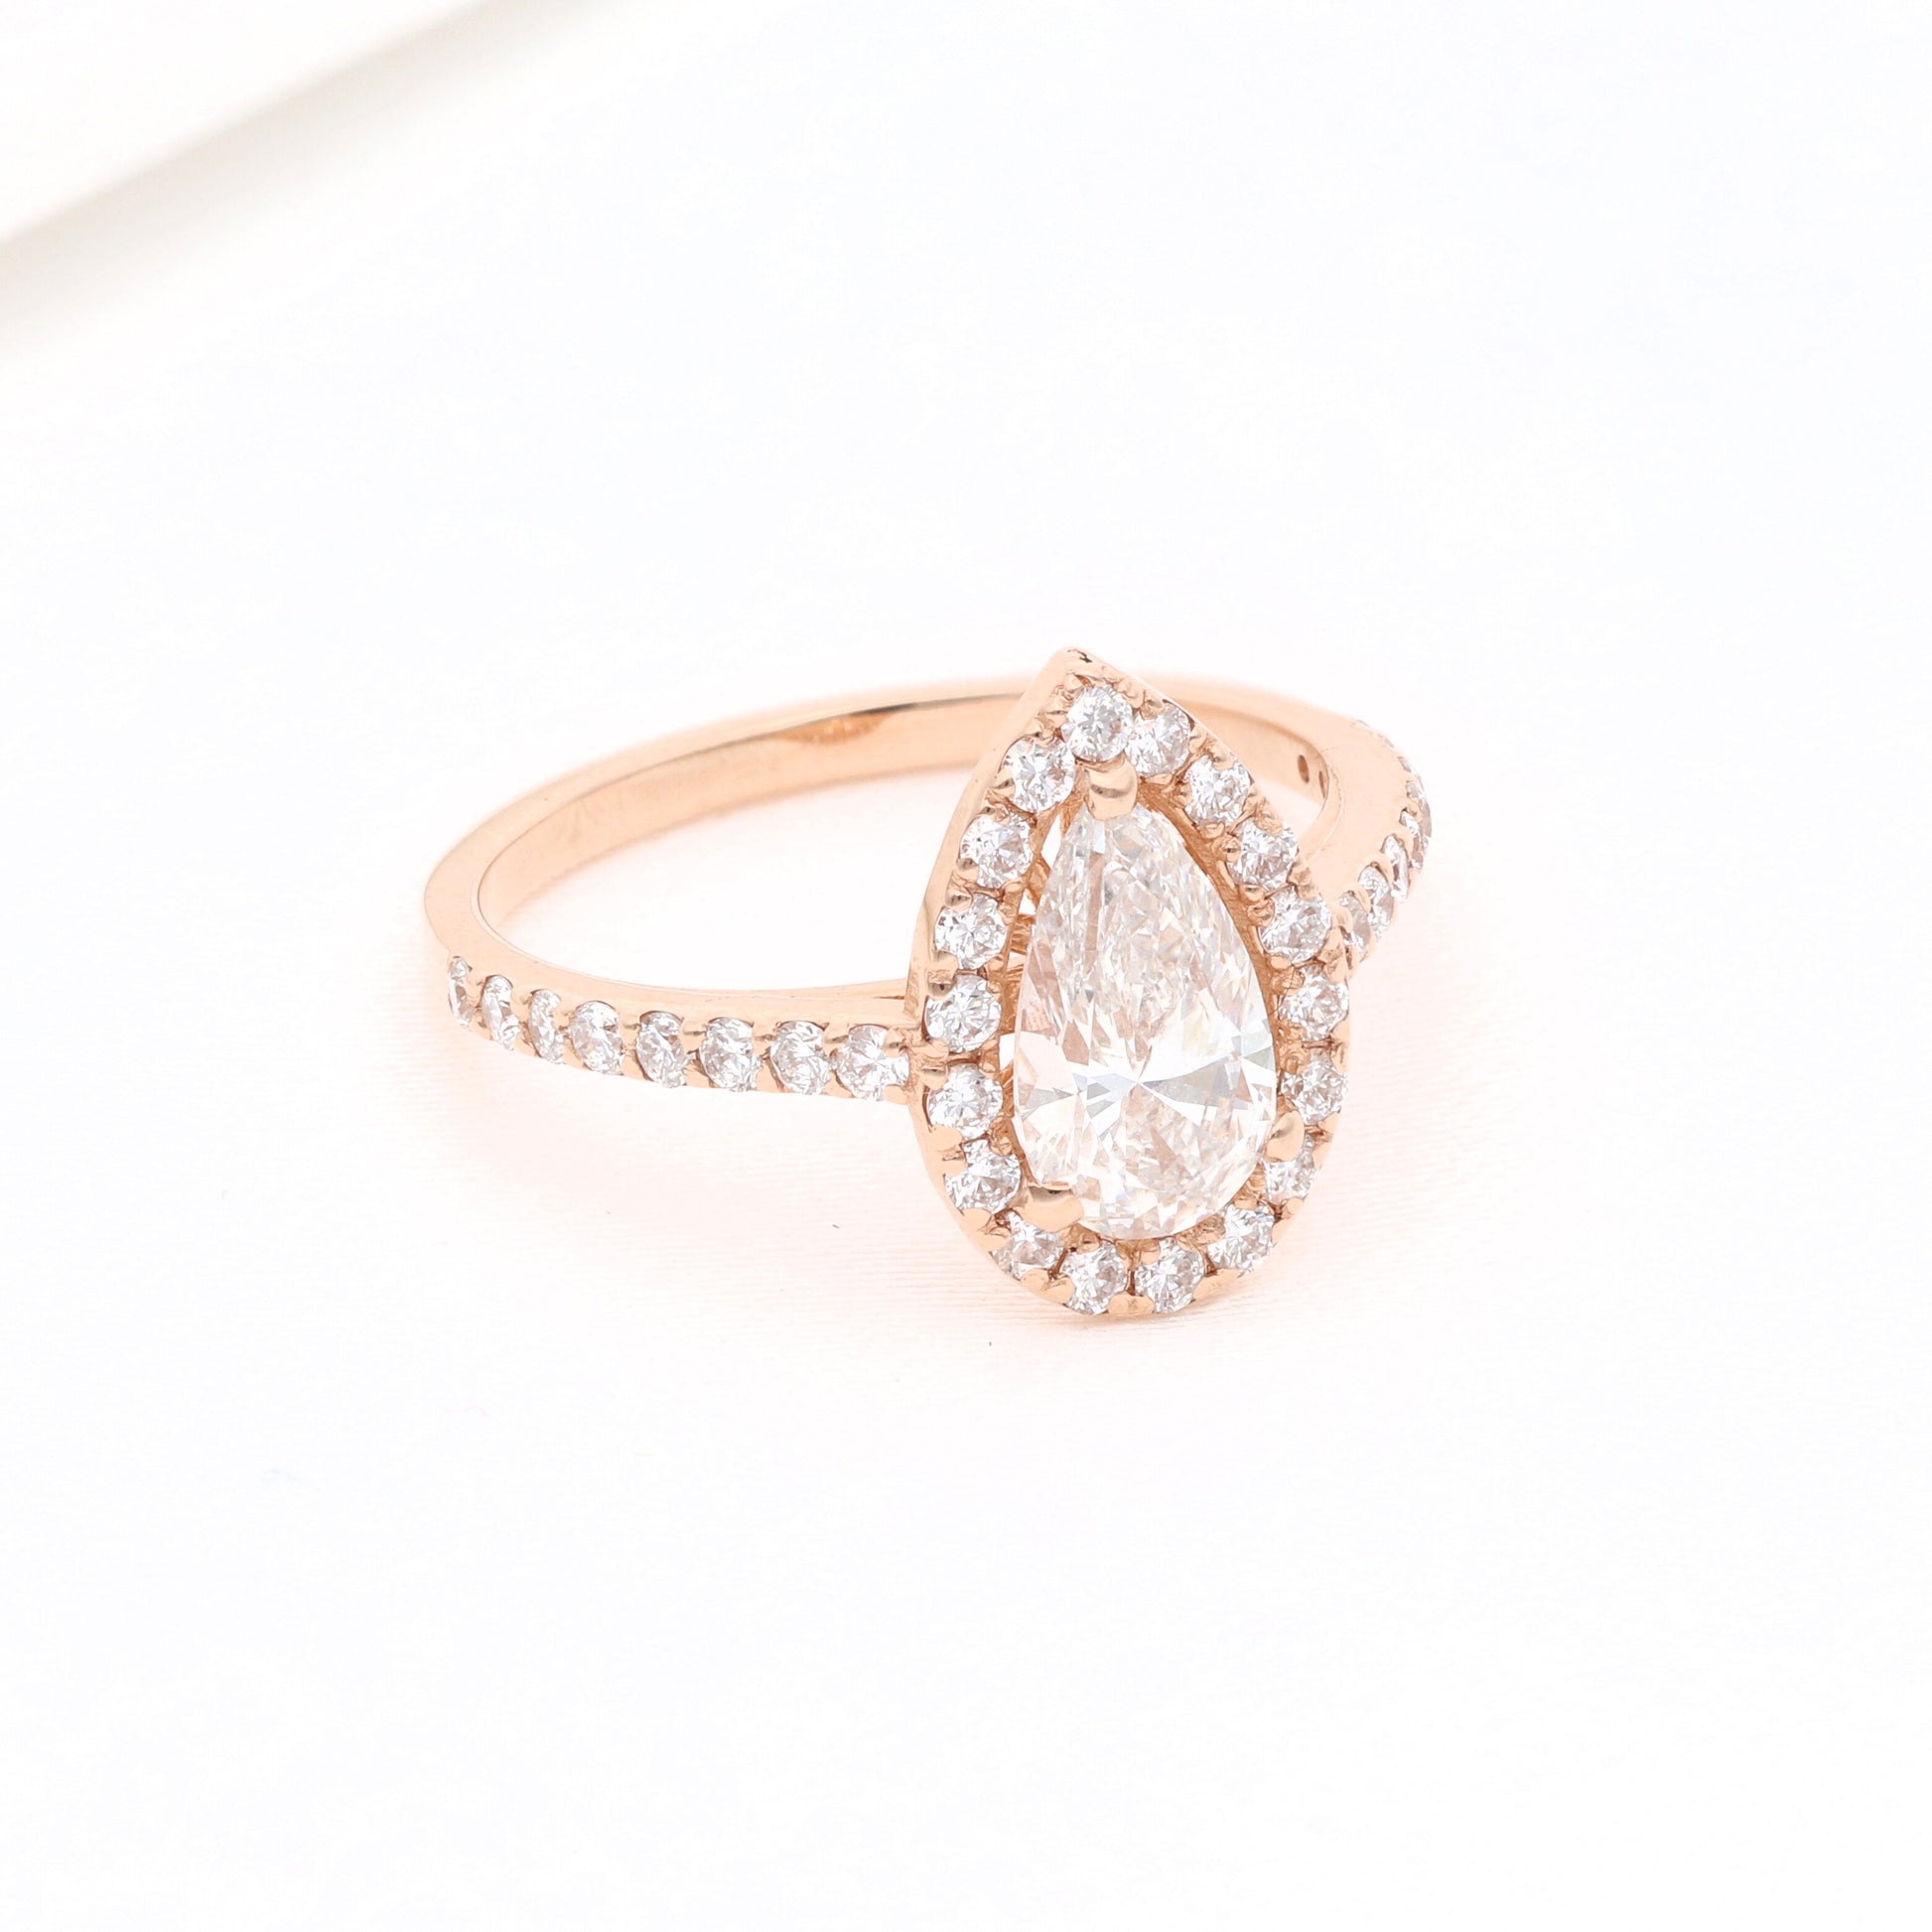 Žiedas su sintetiniais deimantais vestuviniaiziedai.lt